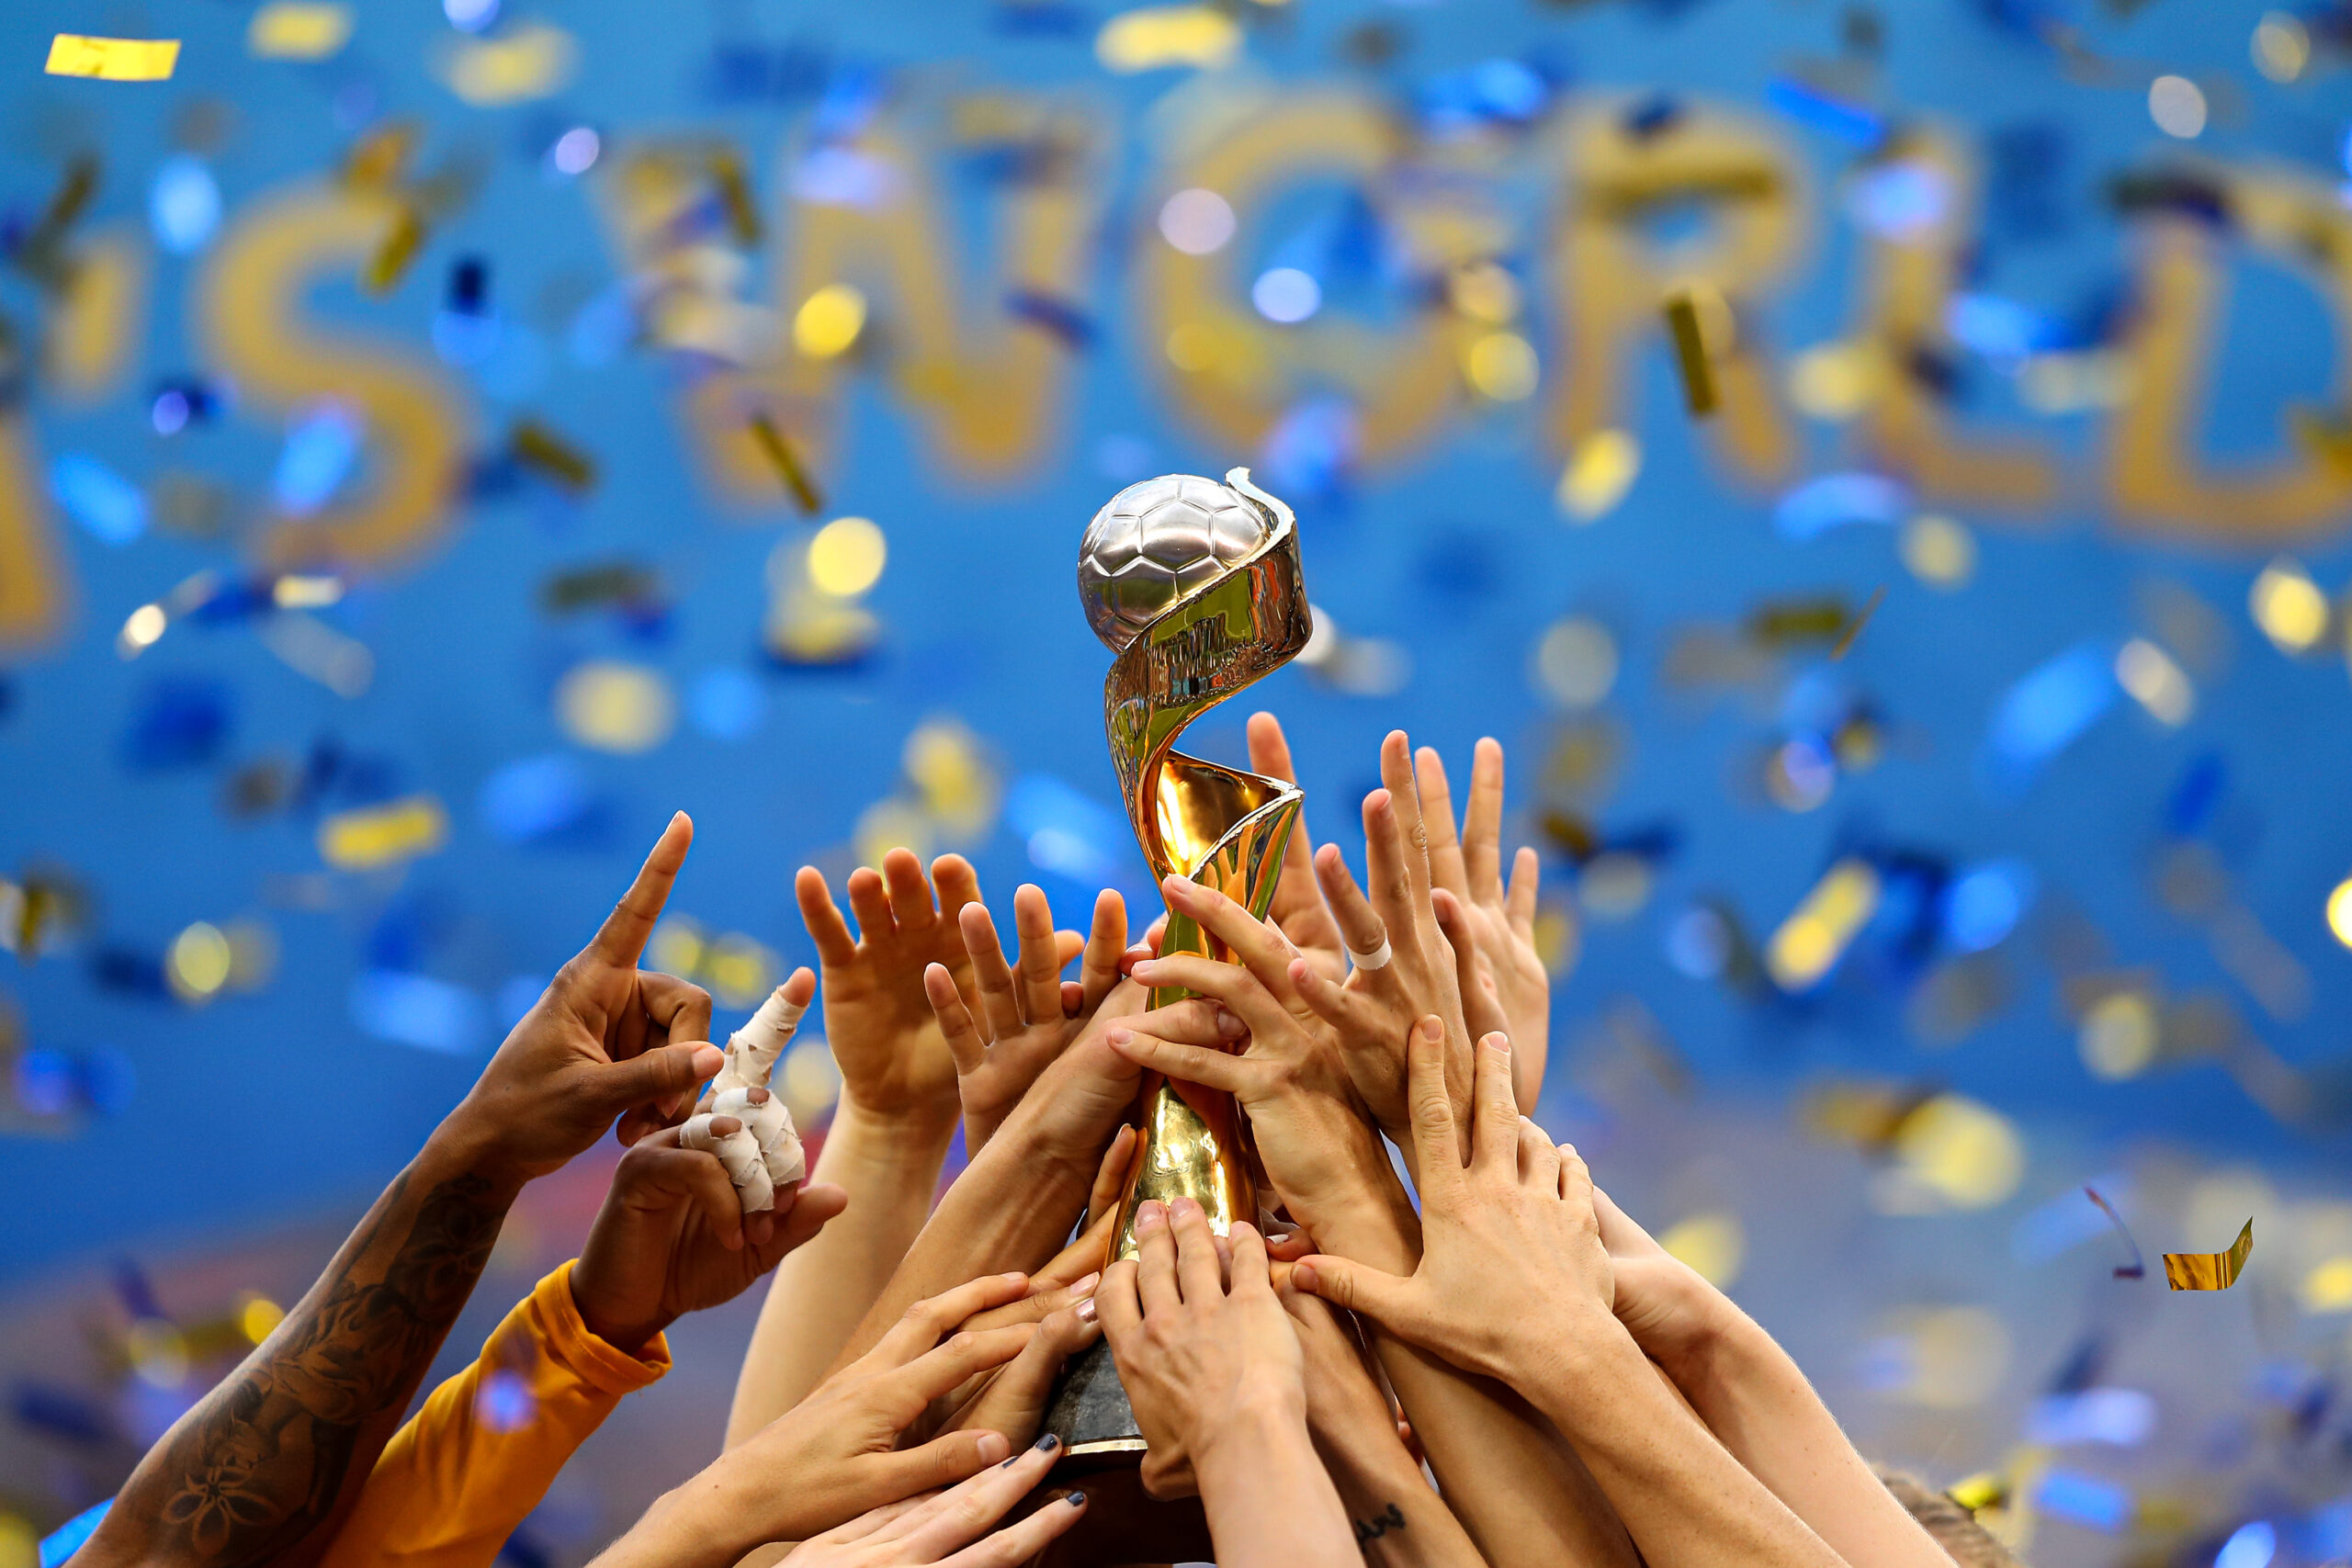 België, Duitsland en Nederland dienen een gezamenlijk bod in om het WK voetbal van 2027 te mogen organiseren